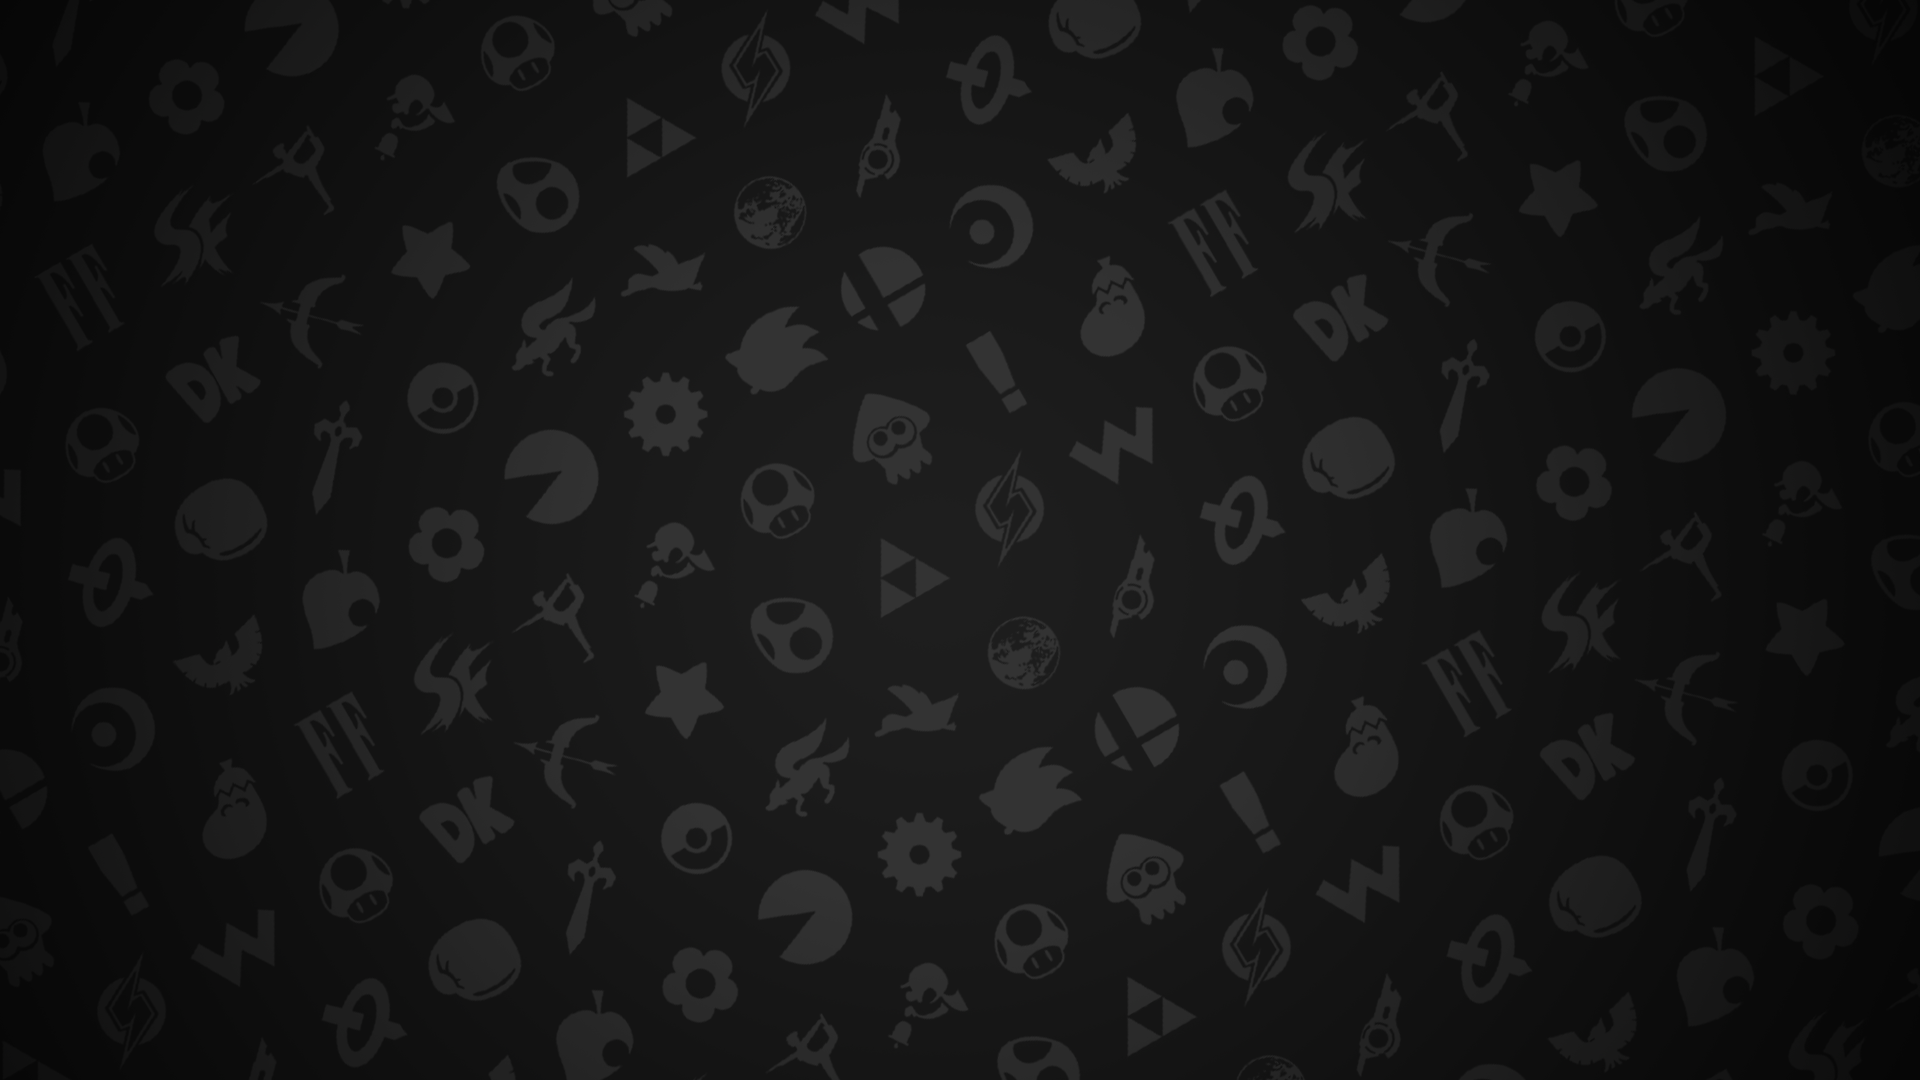 Smash Bros Ultimate Logo Wallpapers on WallpaperDog